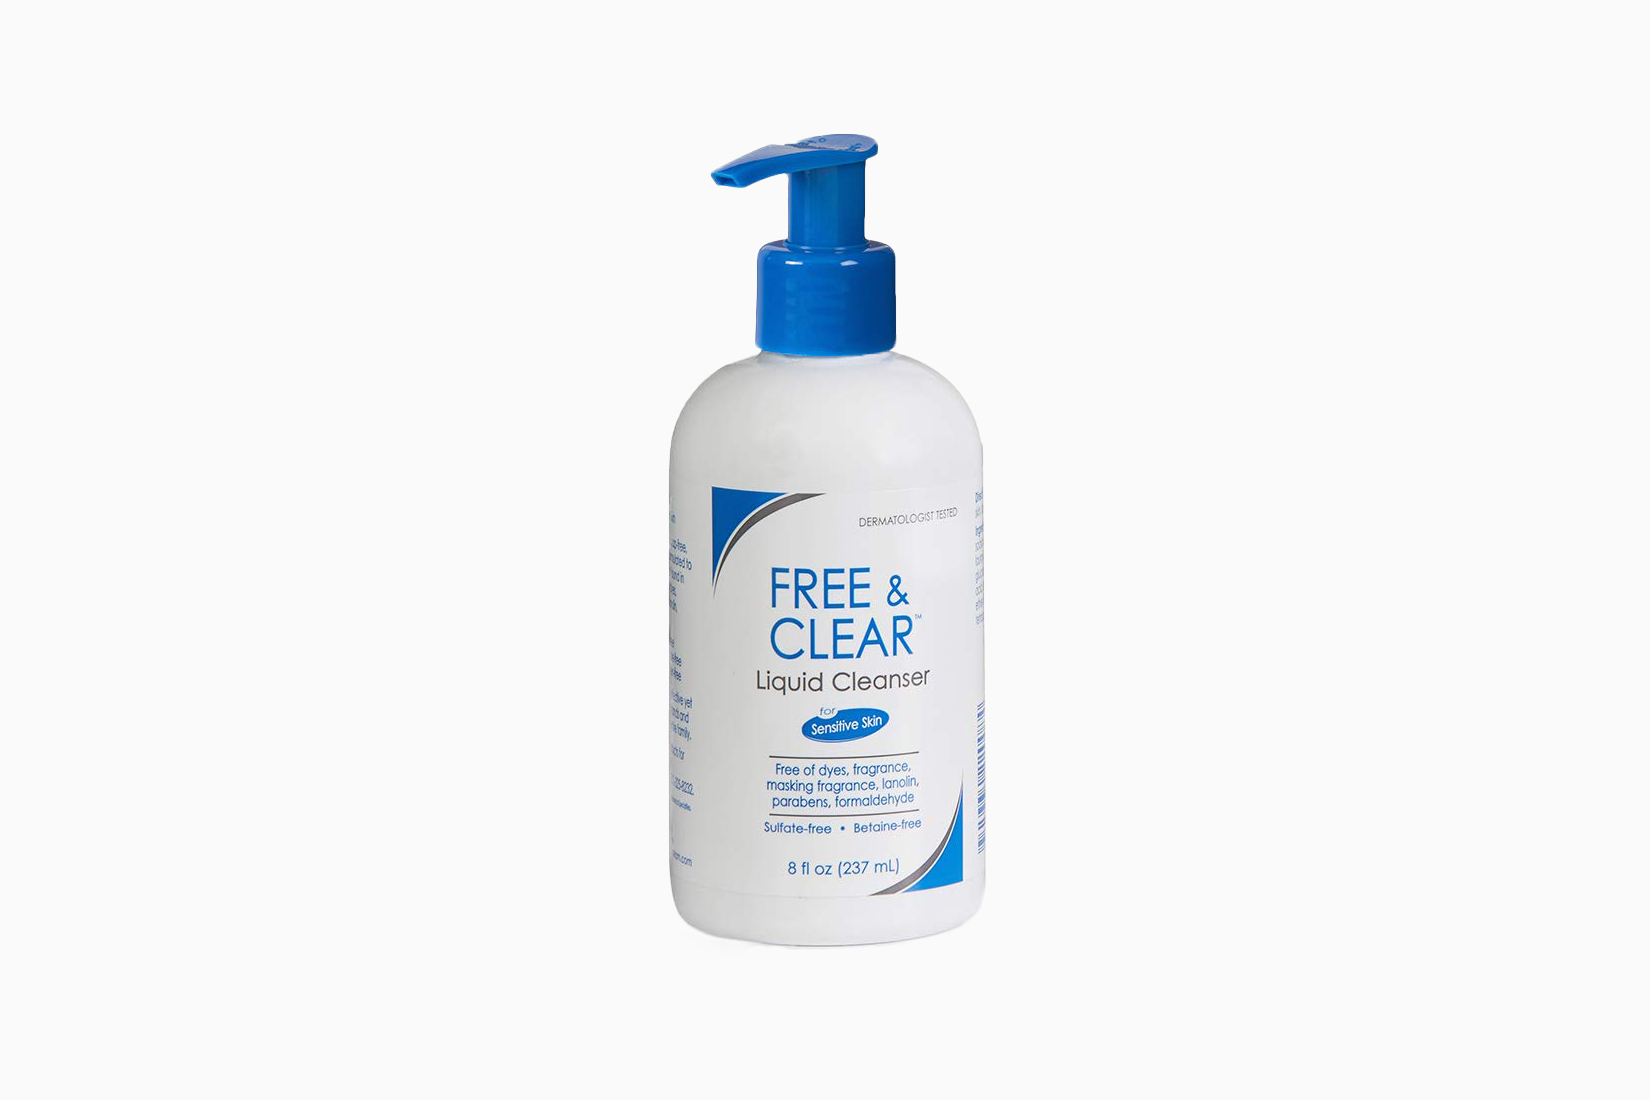 Le meilleur savon à mains libre et clair - Luxe Digital